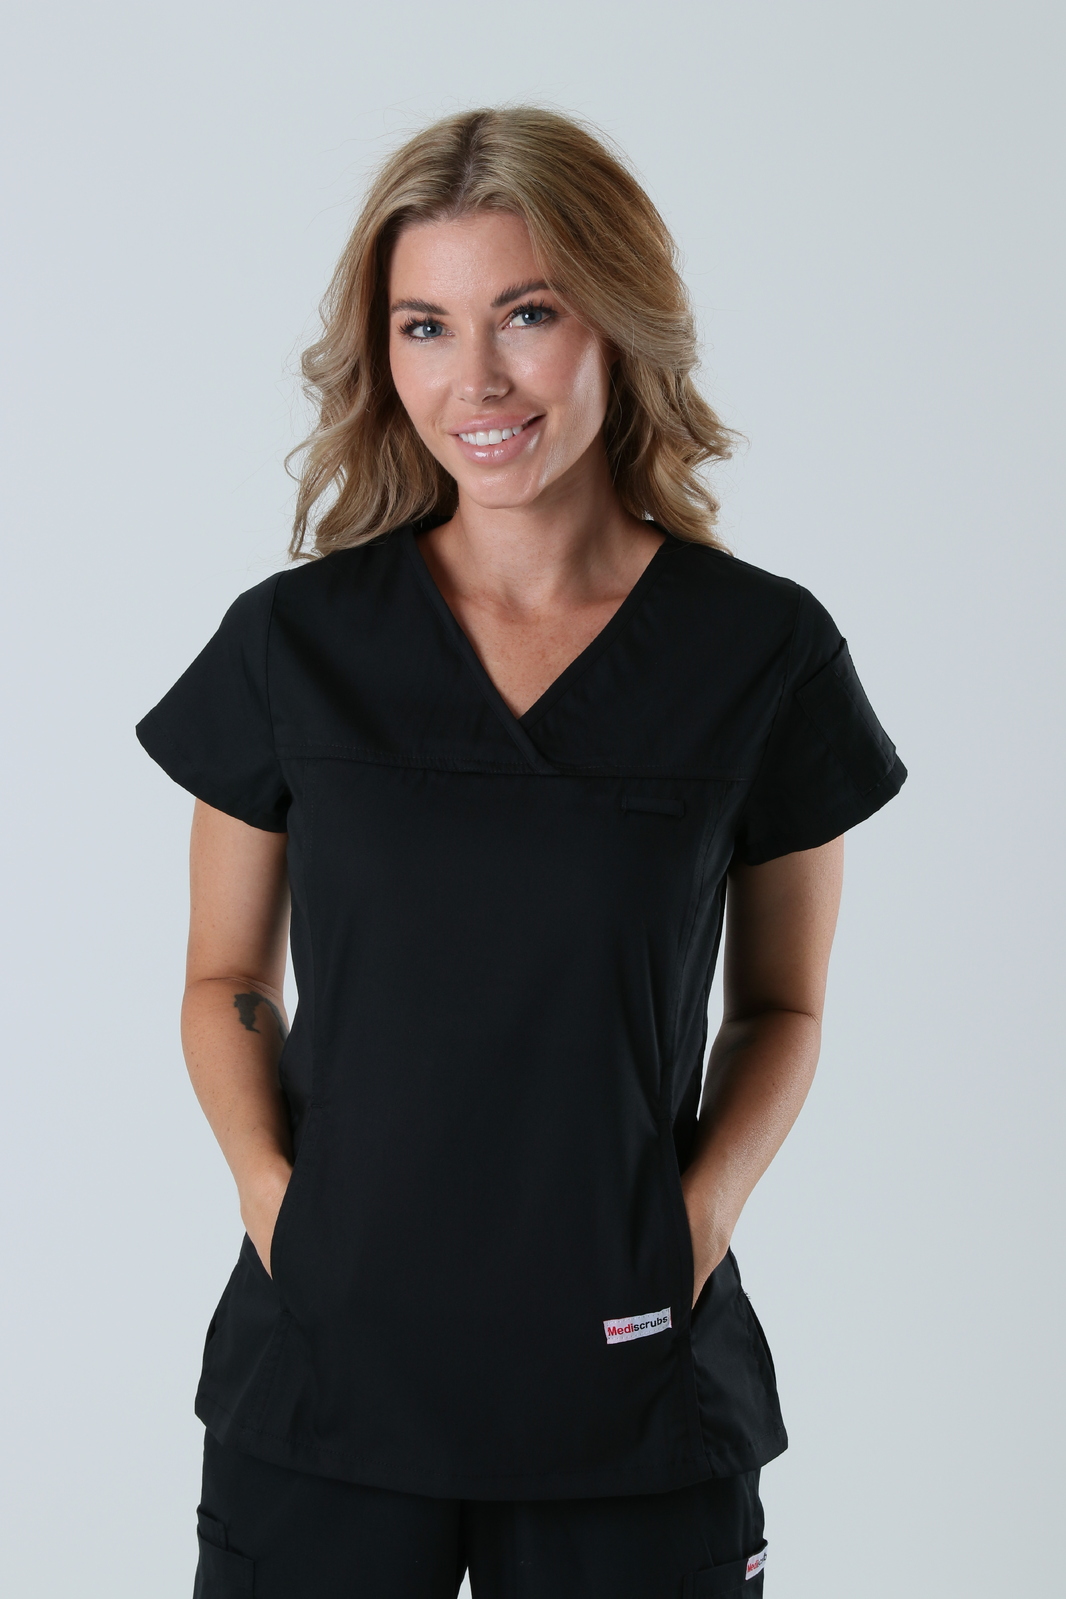 Queensland Children's Hospital Emergency Department Assistant in Nursing  Uniform Top Bundle  (Women's Fit Top in Black incl Logos)